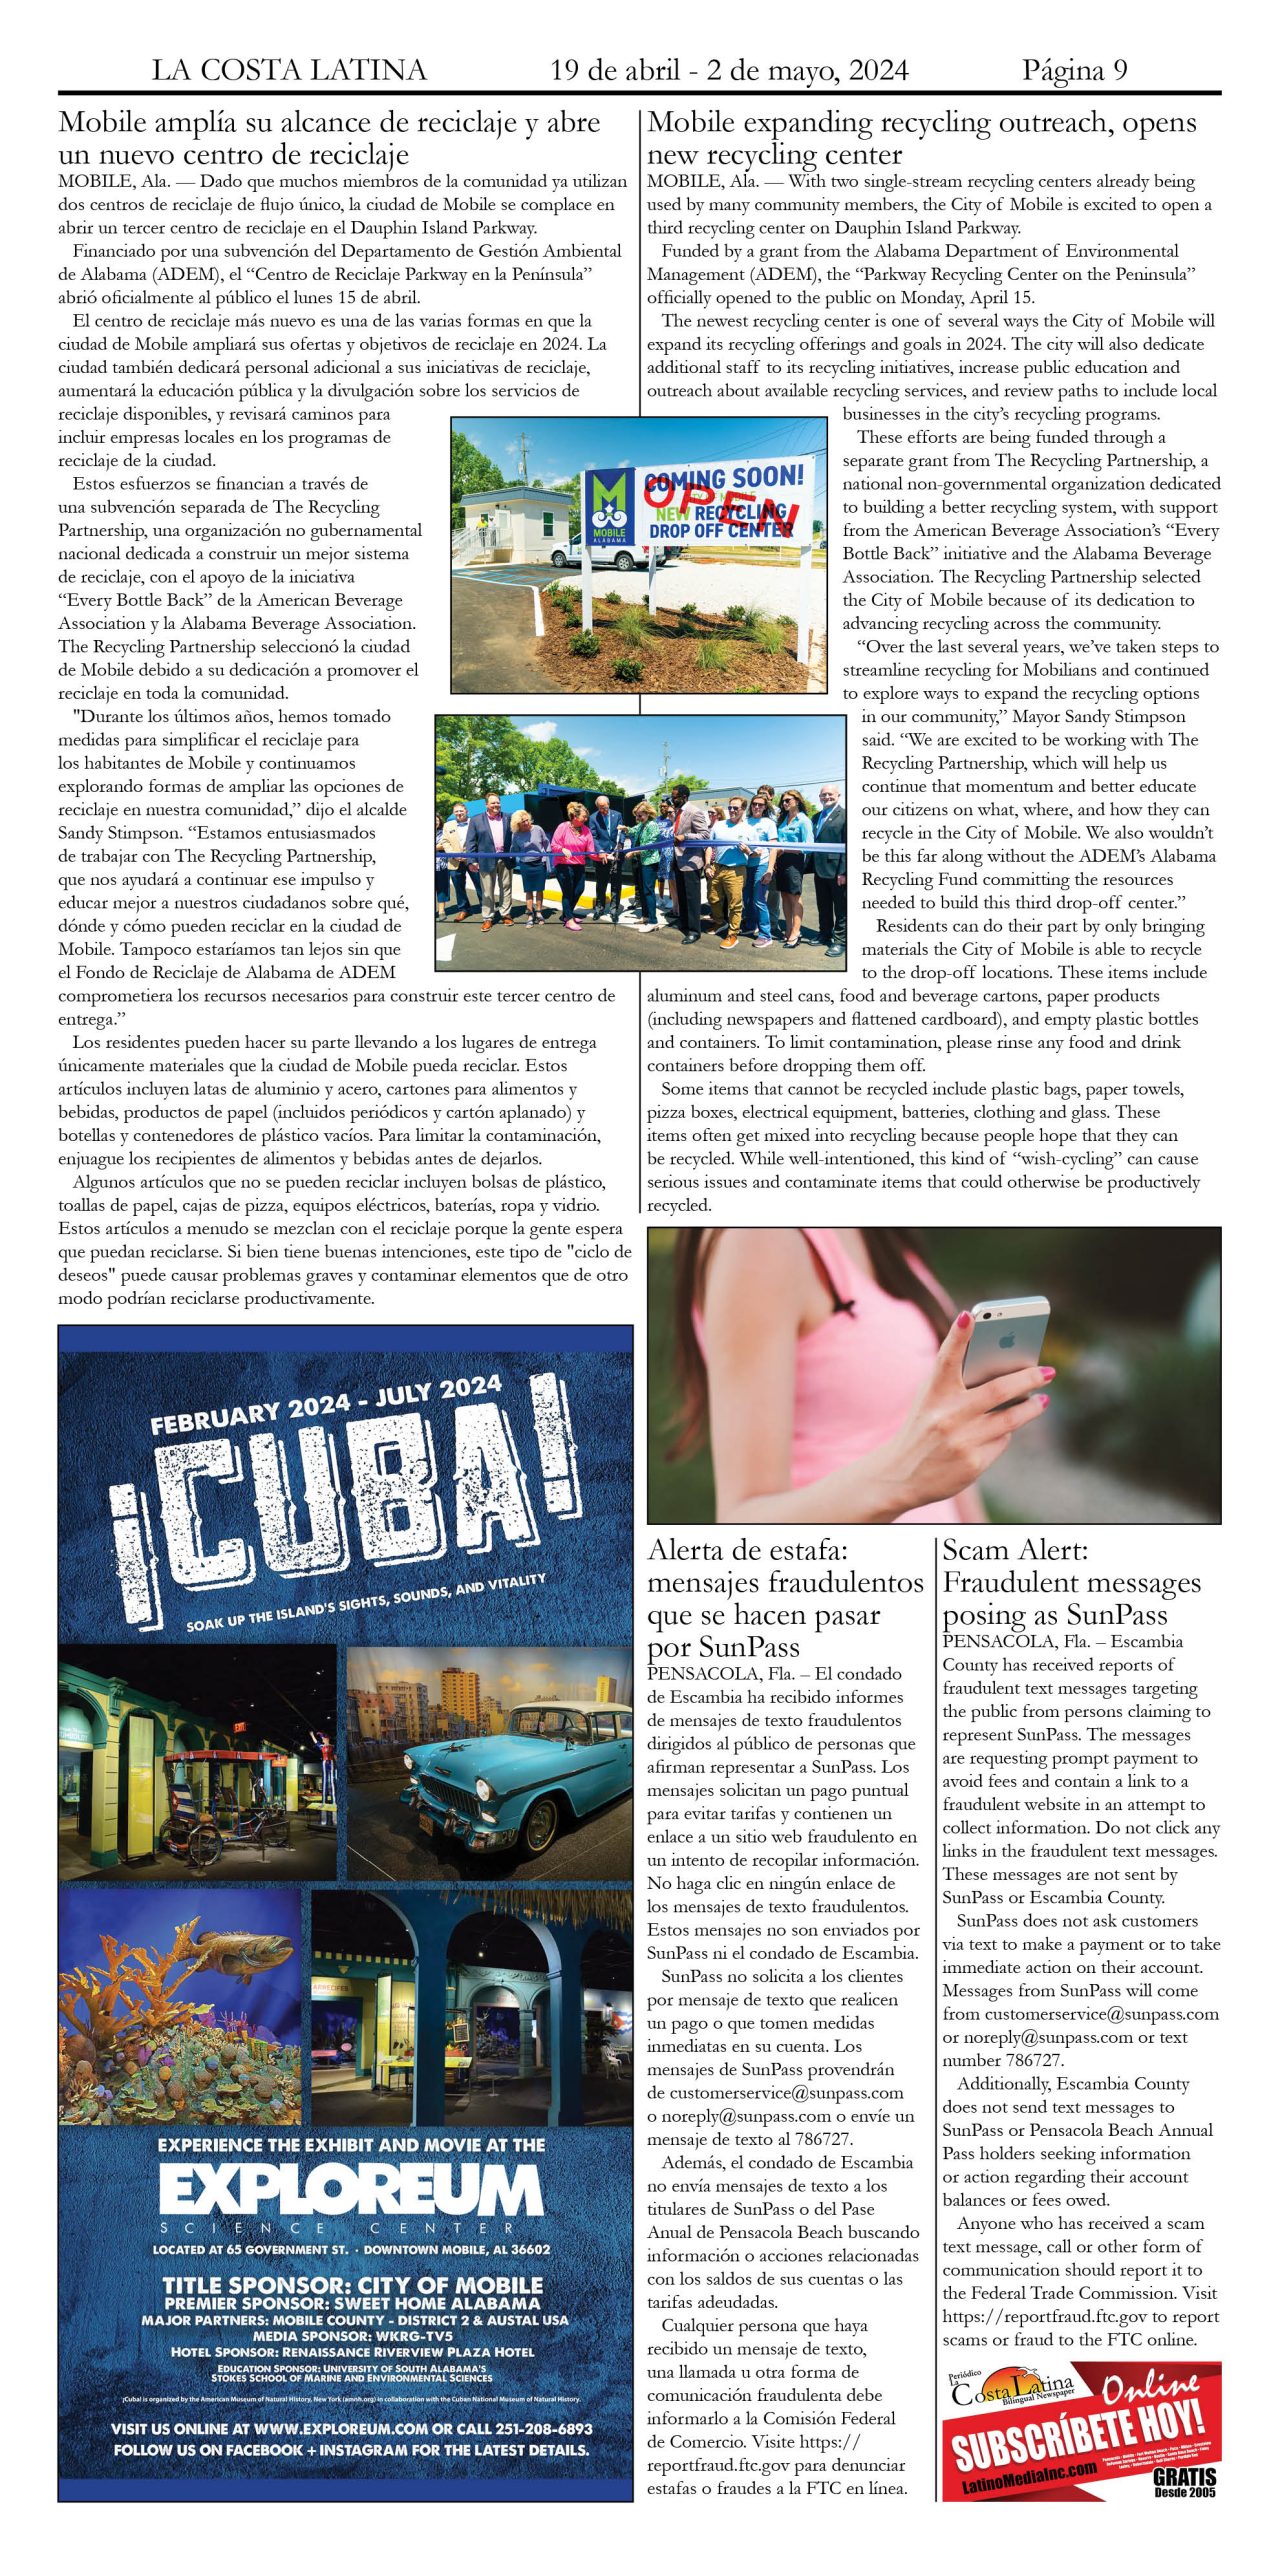 La Costa Latina April 19 - May 2, 2024 page 9